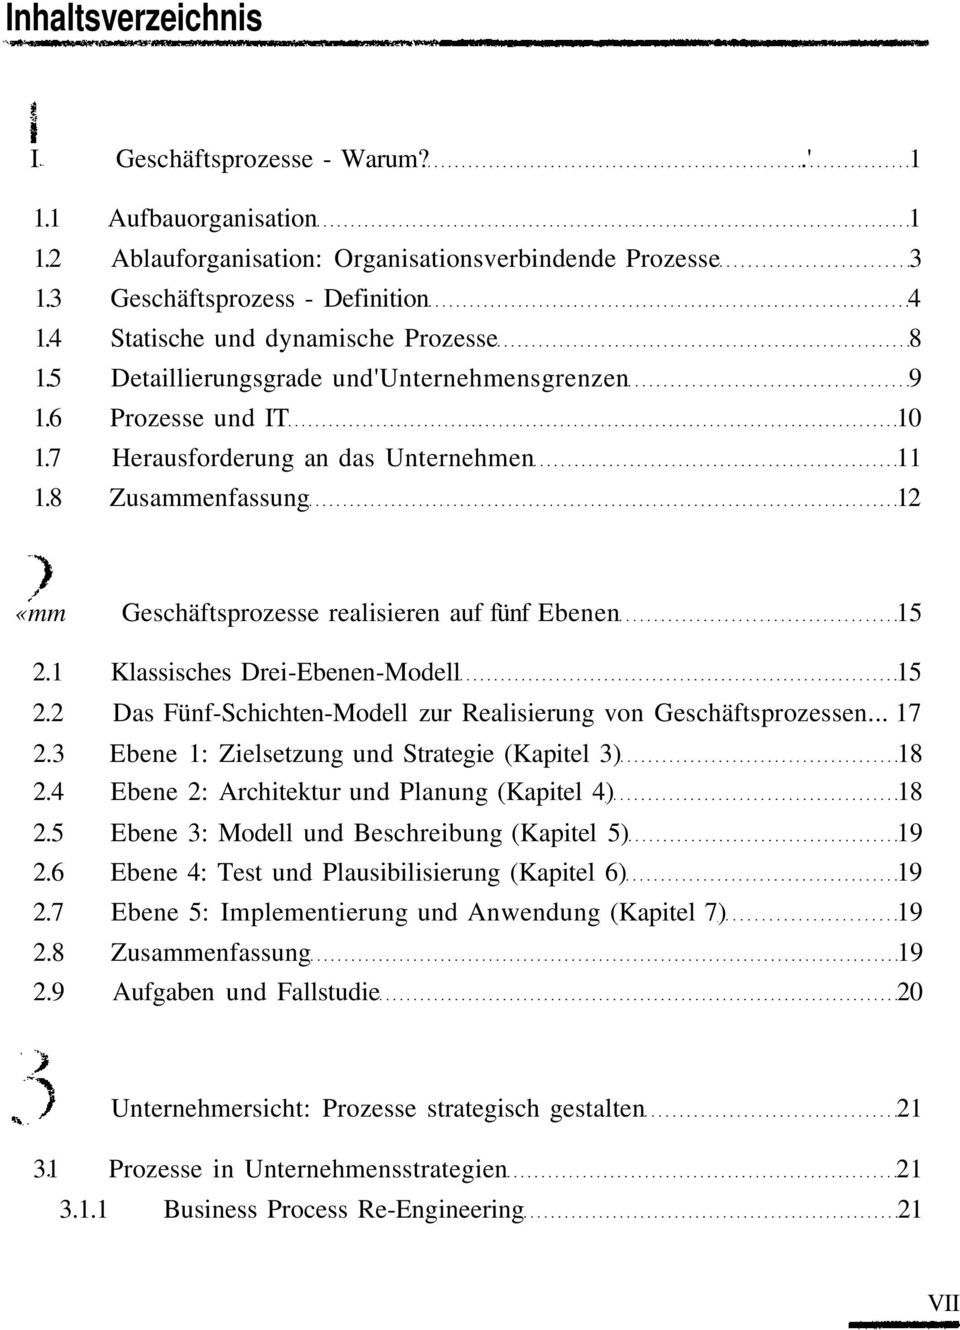 1 Klassisches Drei-Ebenen-Modell 15 2.2 Das Fünf-Schichten-Modell zur Realisierung von Geschäftsprozessen... 17 2.3 Ebene 1: Zielsetzung und Strategie (Kapitel 3) 18 2.